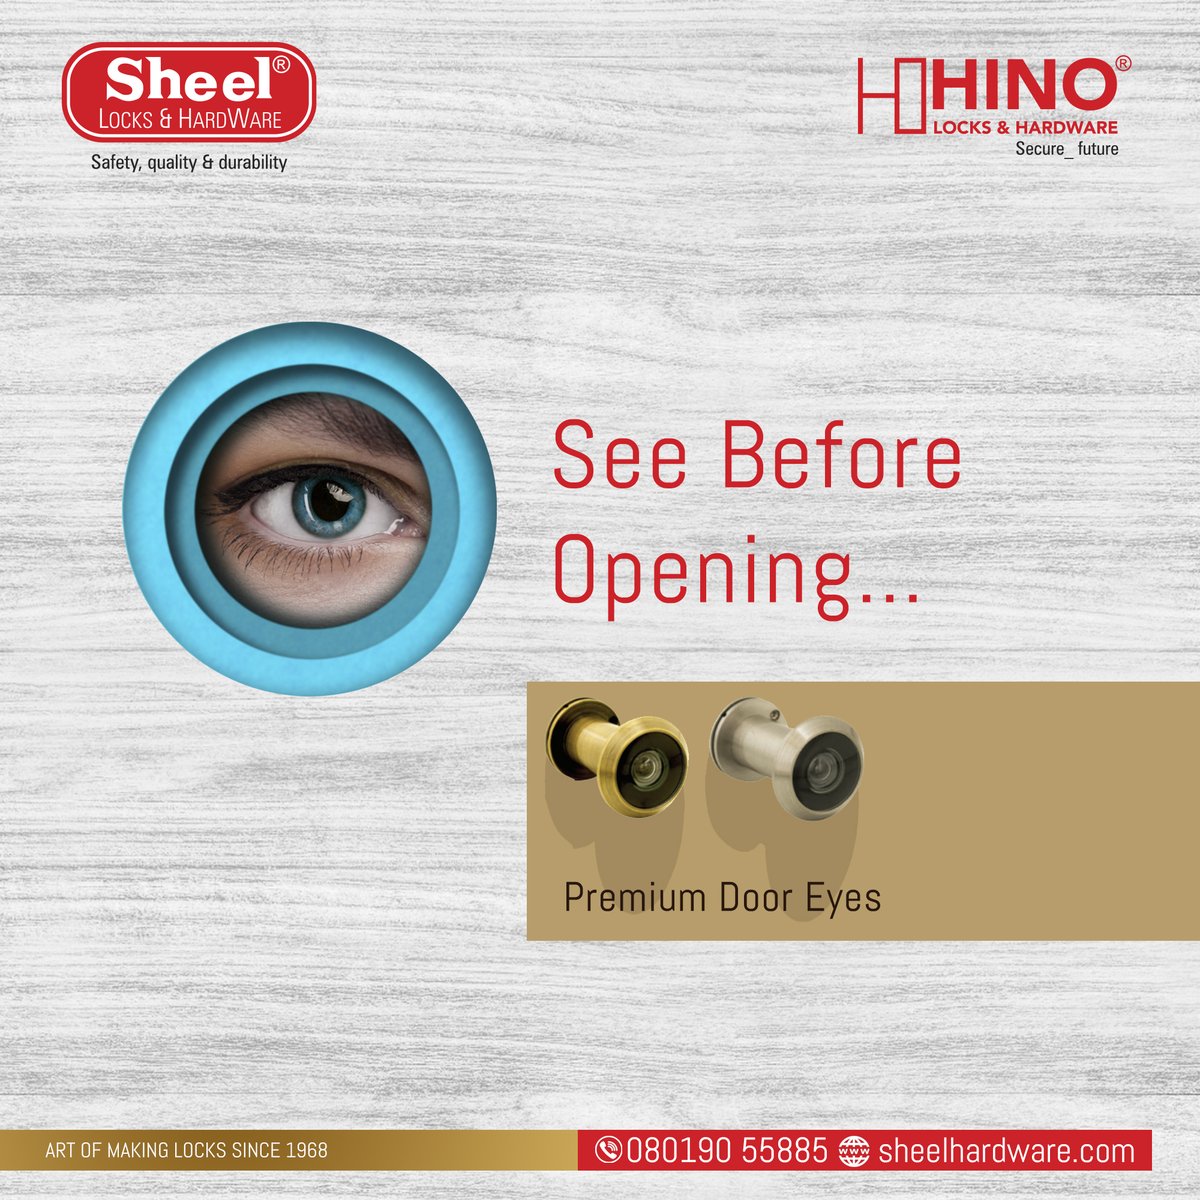 Our premium door eyes will increase the security of your home! 
#doorlocks #doorhandles #doors #doorhardware #locks #doorhandlefactory #highqualitydoorhandles #smarthome #homesecurity #sheelhardware #sheellocks #Hyderabad